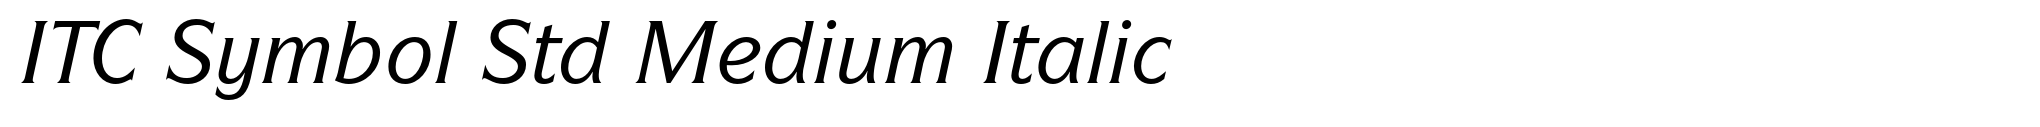 ITC Symbol Std Medium Italic image